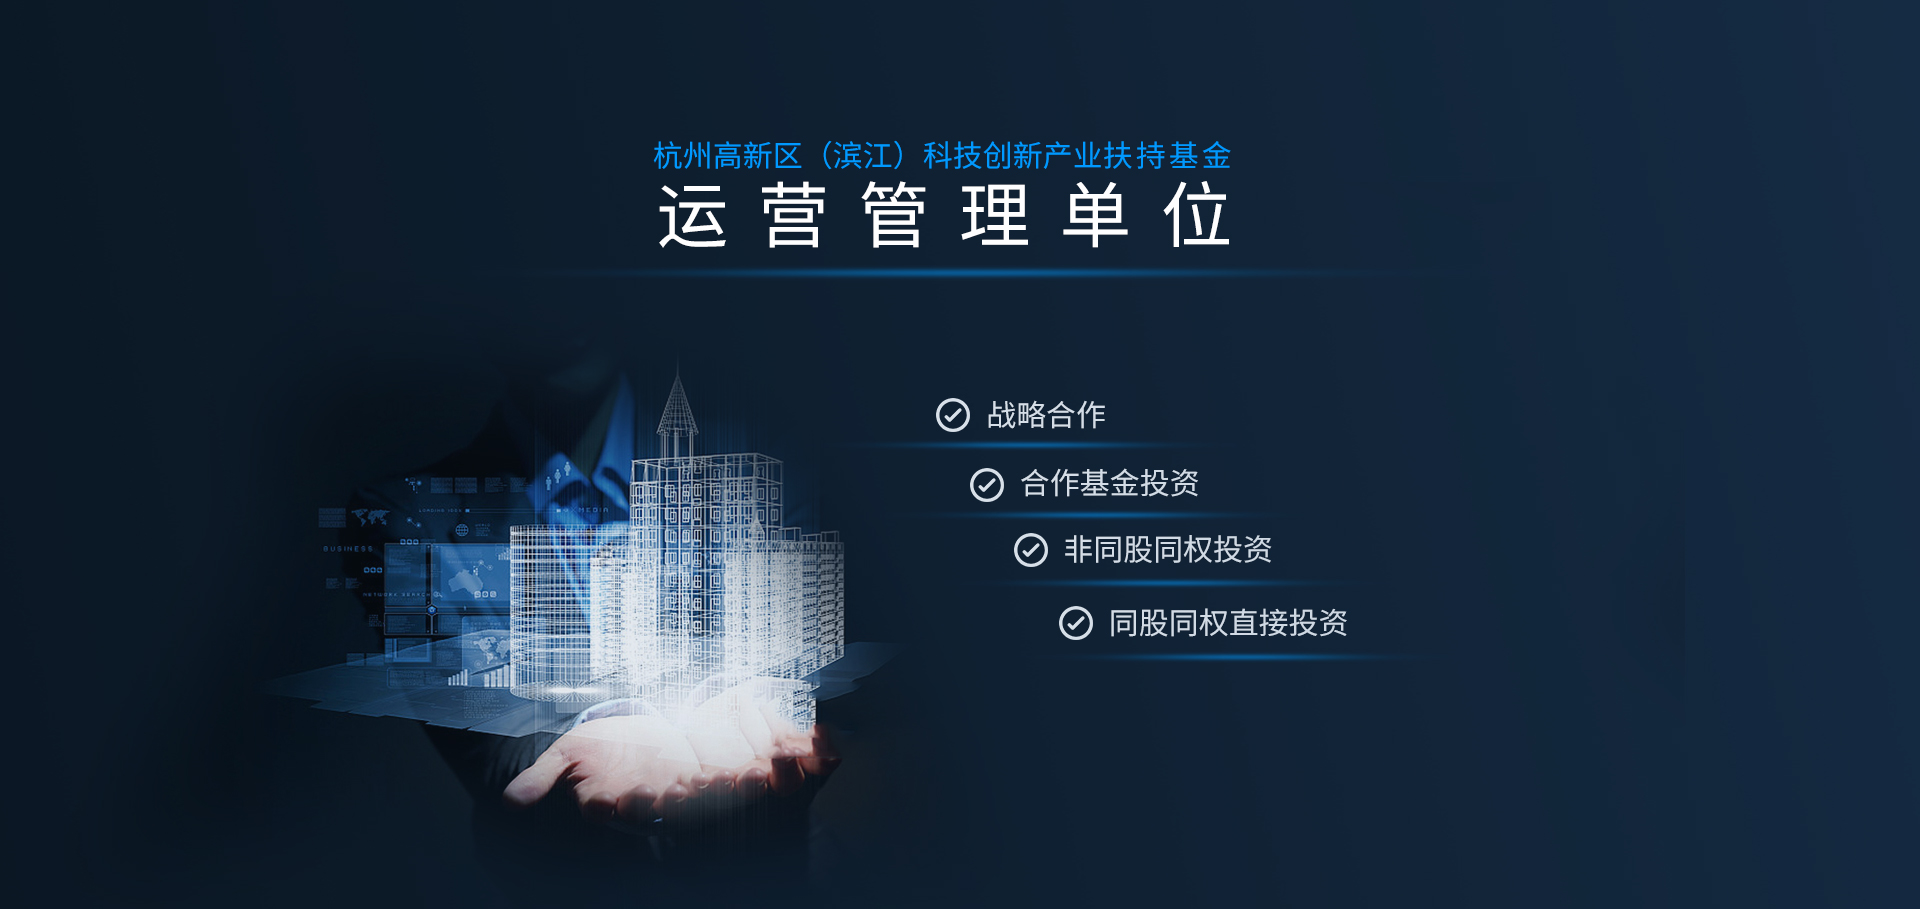 杭州高新区（滨江）科技创新产业扶持基金  运营管理单位